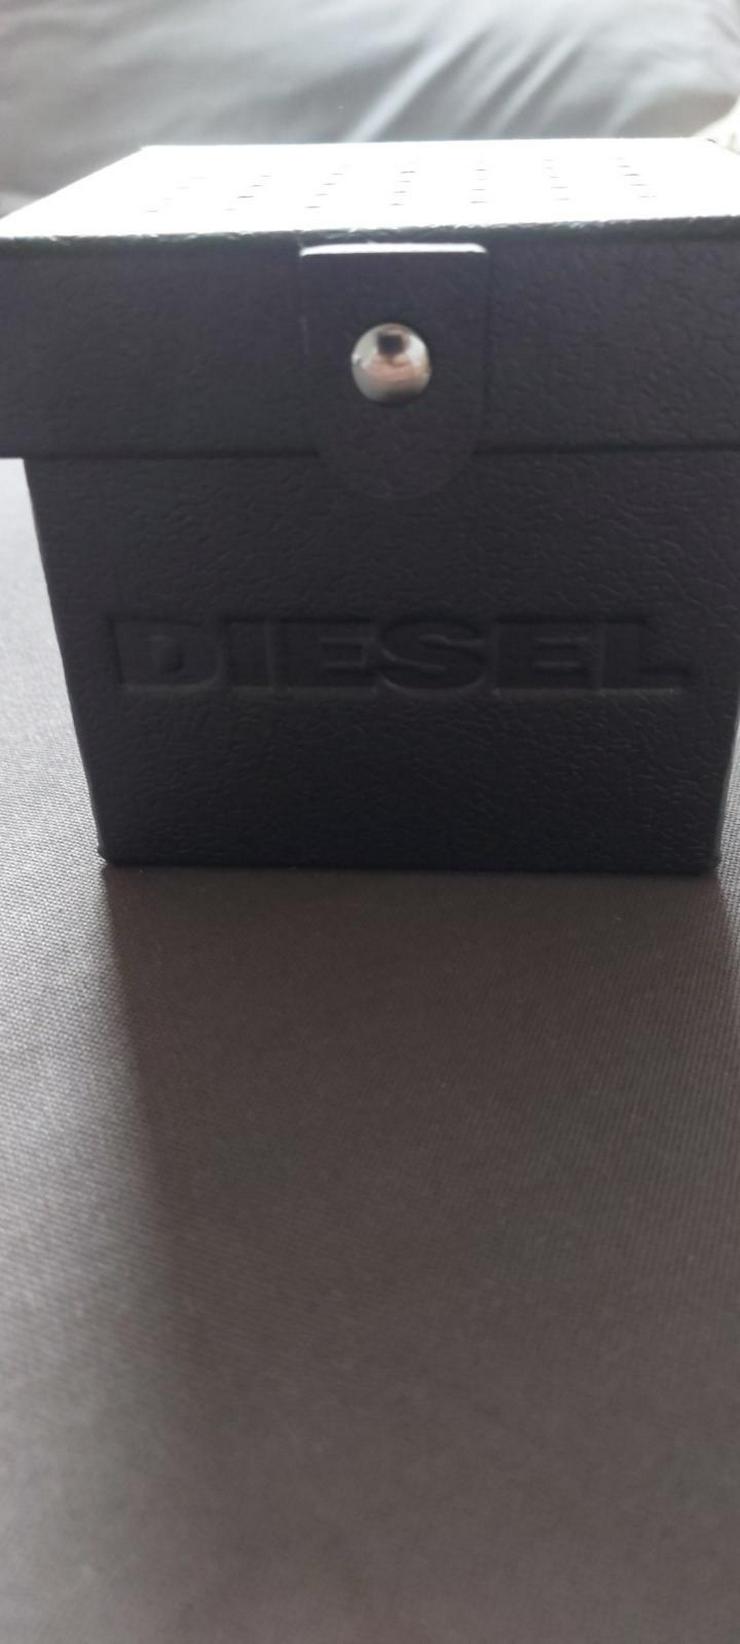 Bild 4: Diesel DZ 4531 Uhr Original Verpackt